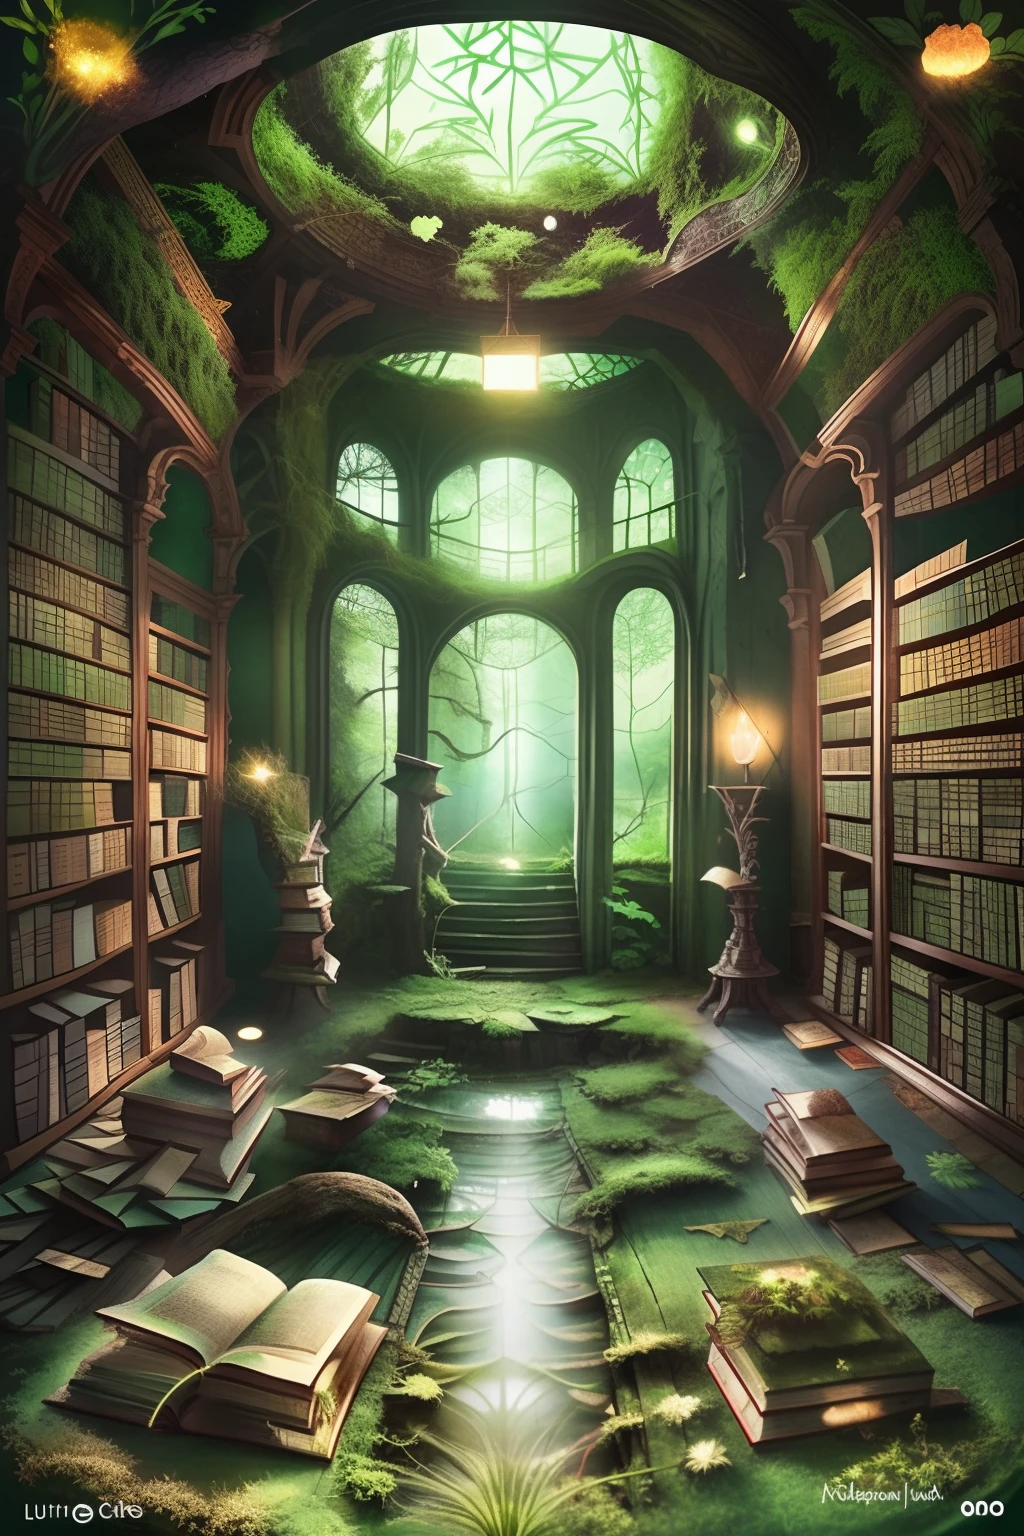 버려진 도서관의 매혹적인 걸작, 바닥 중앙에는 녹색 이끼가 코팅된 신화 서적의 매우 상세한 그림이 있습니다., 필터링된 빛의 부드러운 빛으로 조명됨.